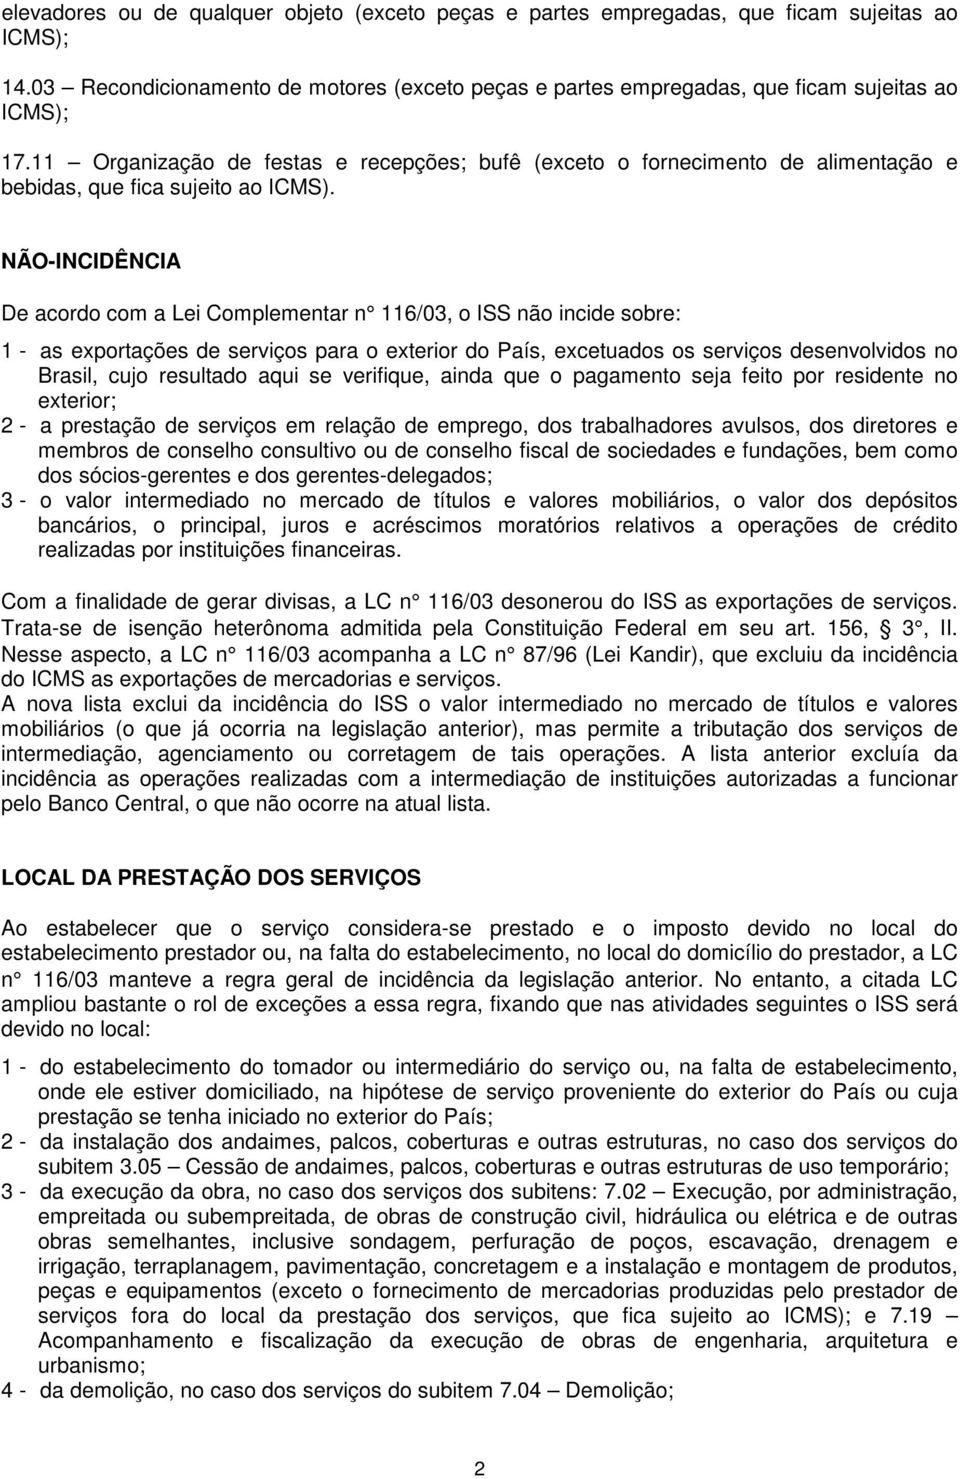 NÃO-INCIDÊNCIA De acordo com a Lei Complementar n 116/03, o ISS não incide sobre: 1 - as exportações de serviços para o exterior do País, excetuados os serviços desenvolvidos no Brasil, cujo